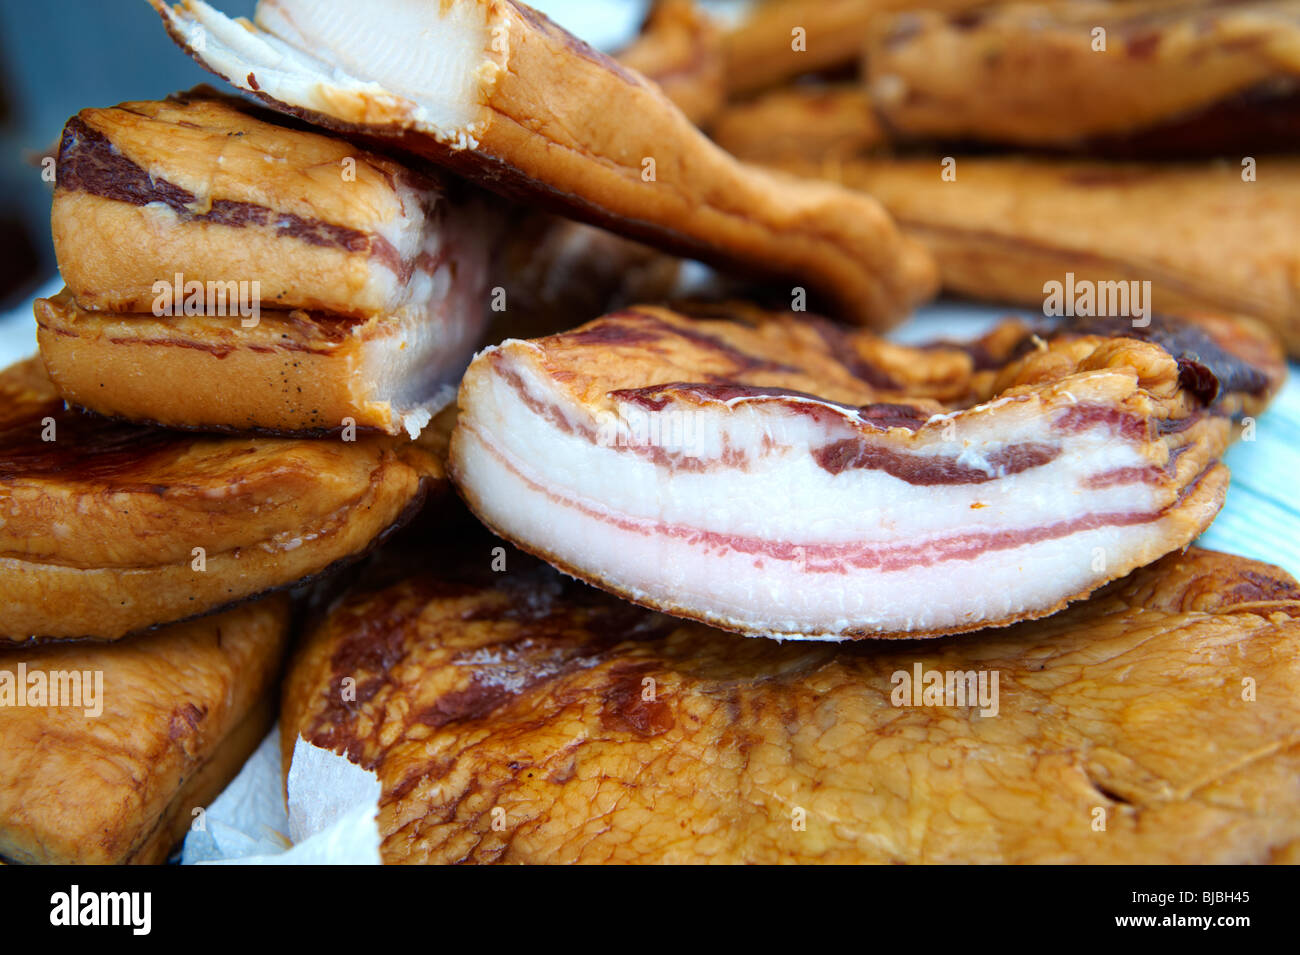 Mangalicsa Mangalitsa (hongrois) gras fumé produits à base de viande de porc. Photos de nourriture. Banque D'Images